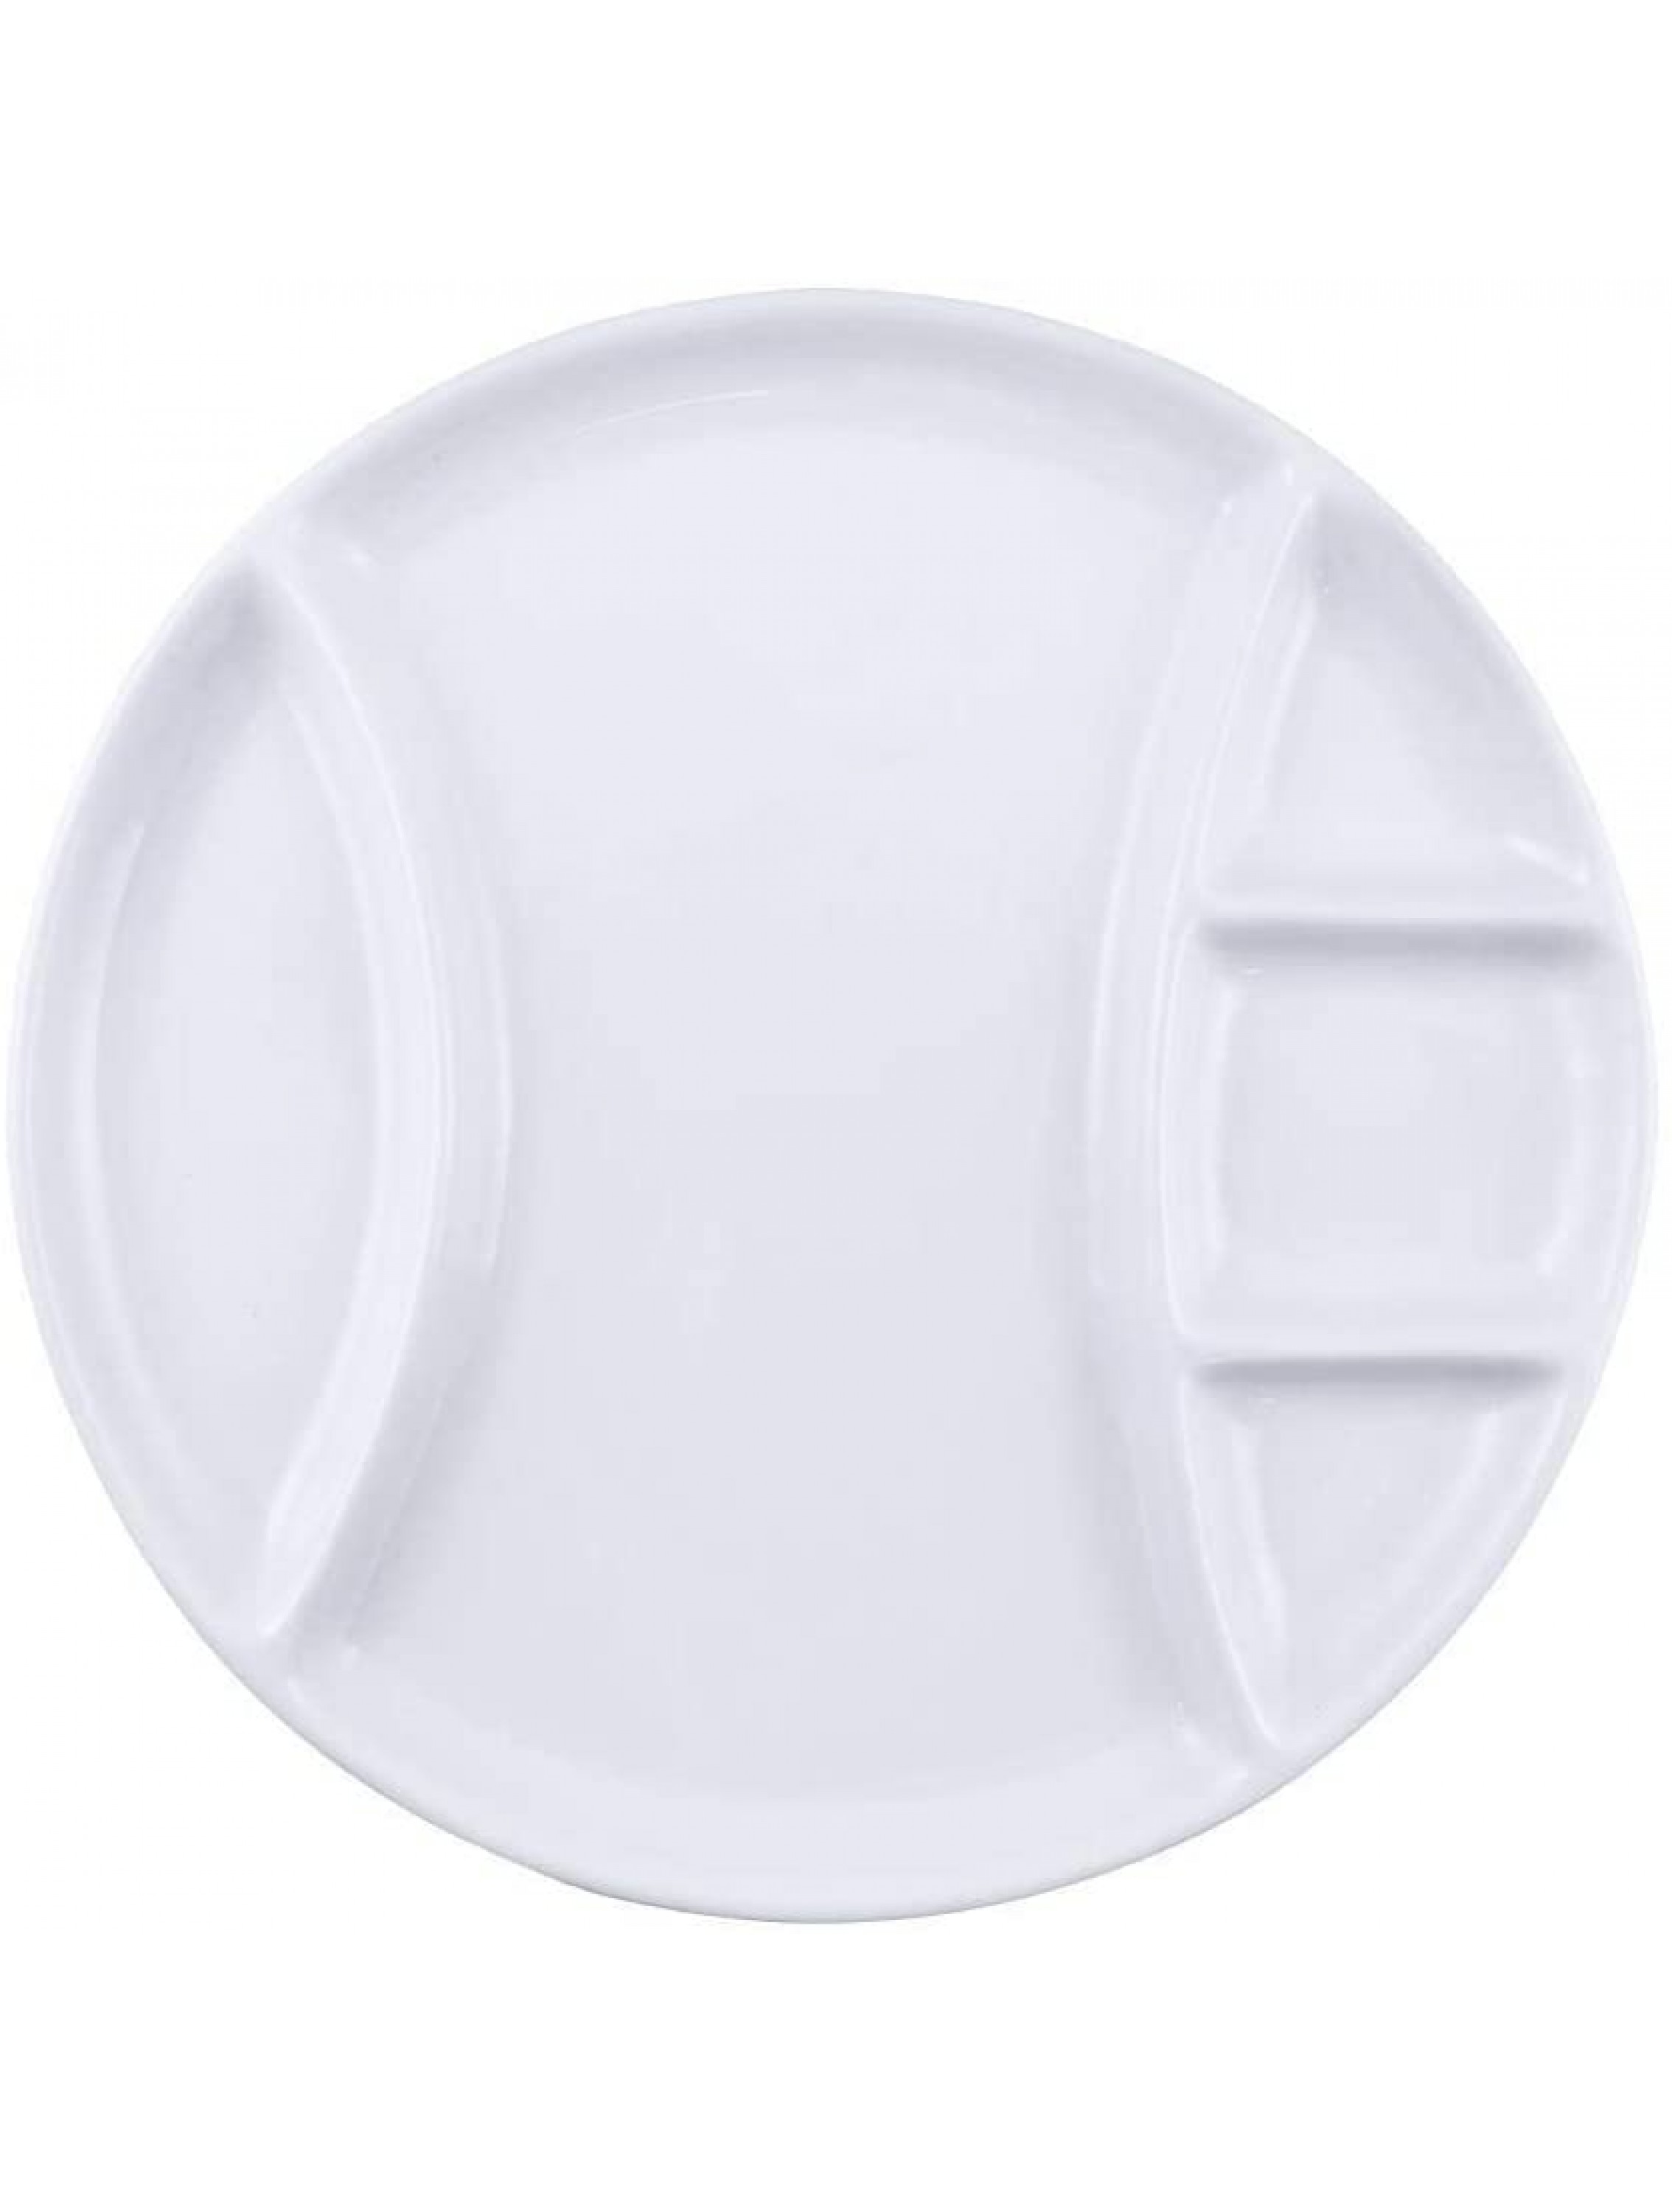 Swissmar Set of 4 White Fondue Plates F 77105 - B5CJMYQ6T